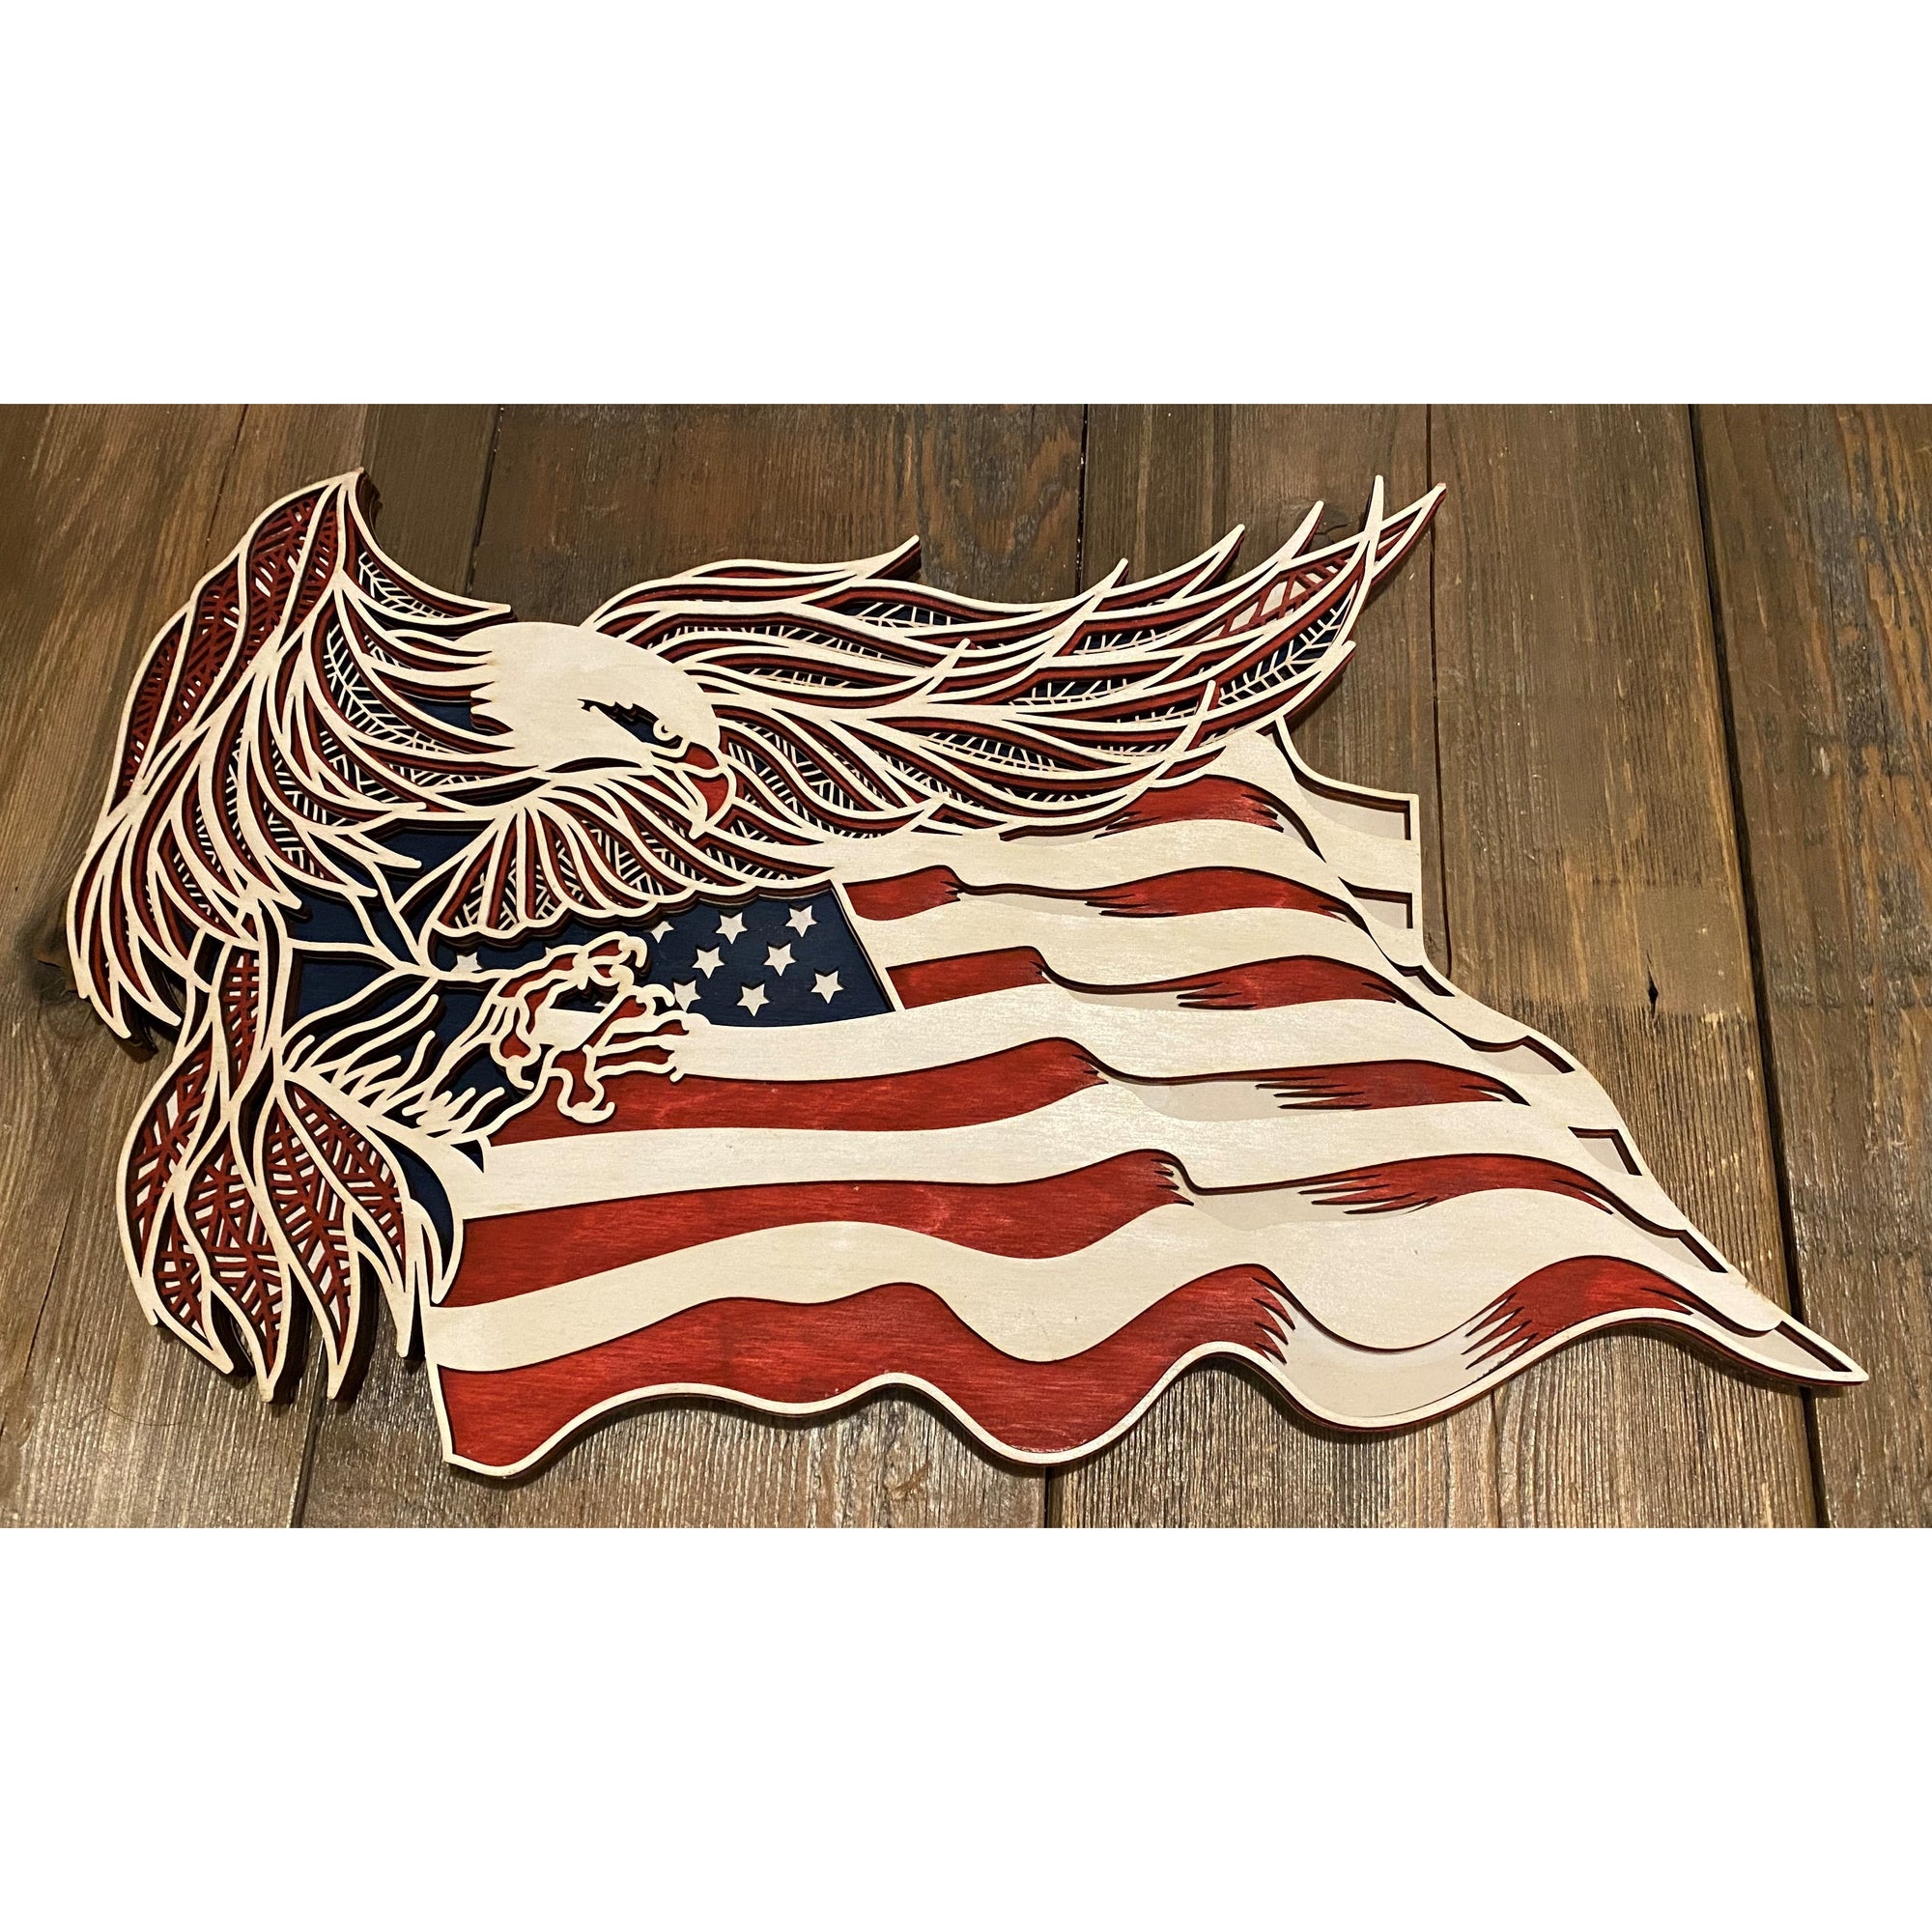 Laser-cut Wood American Eagle Flag